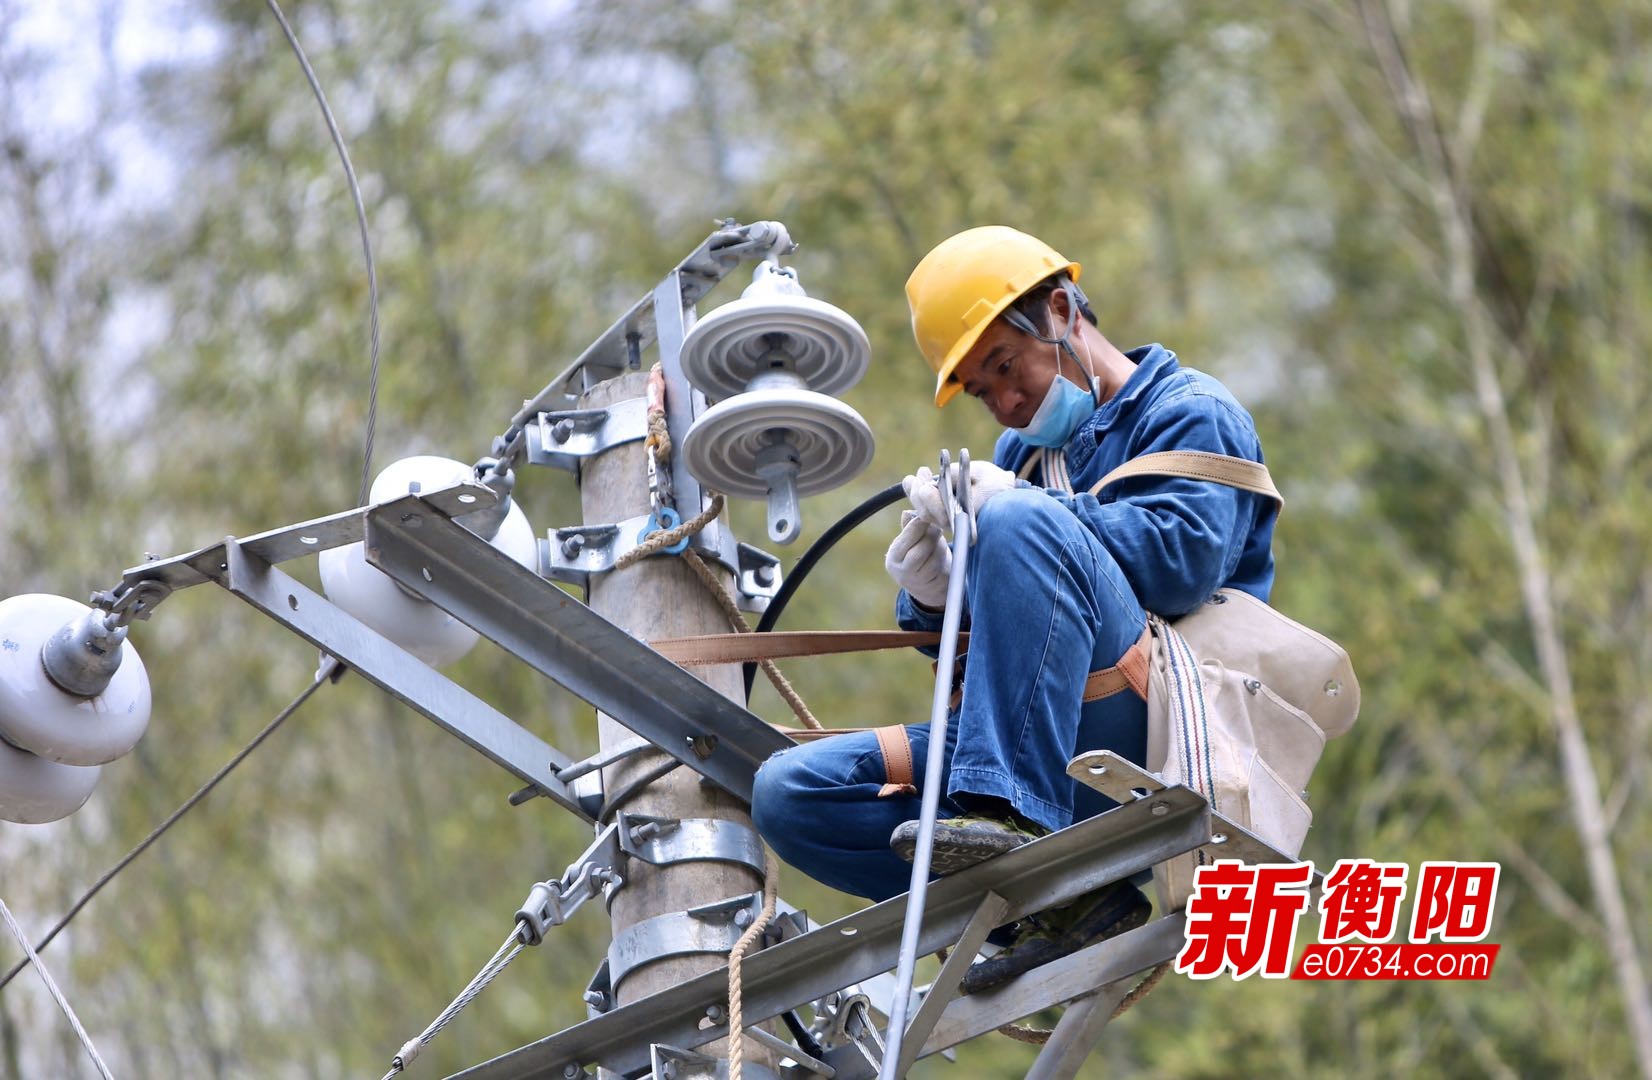 国网衡阳供电公司员工正在对扶贫村农网进行改造升级(摄影:郑贤华).